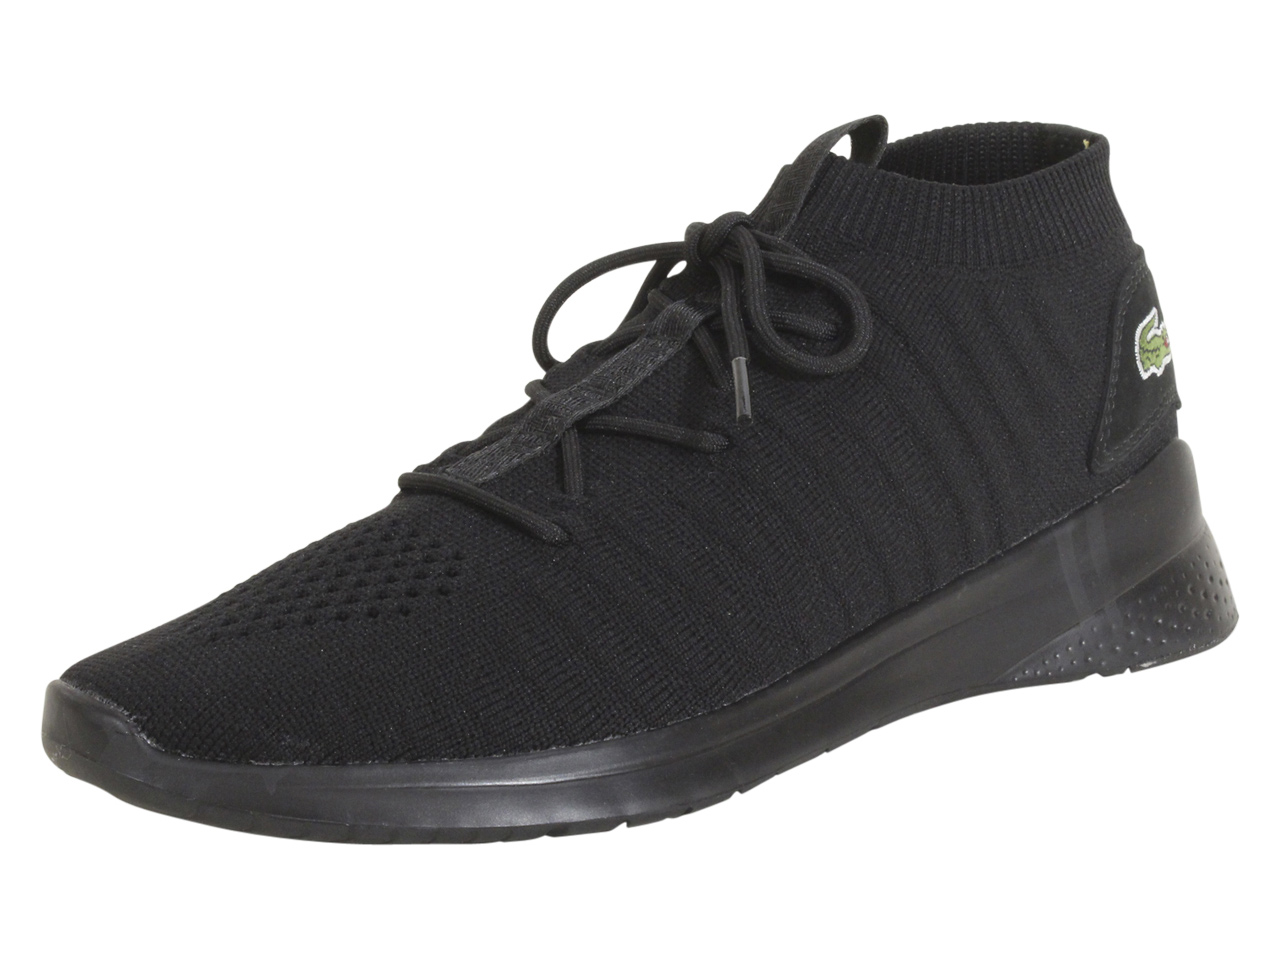 Lacoste LT-Fit-Flex-319 Sneakers Black/Black Men's Low Top Shoes Sz: 8. ...